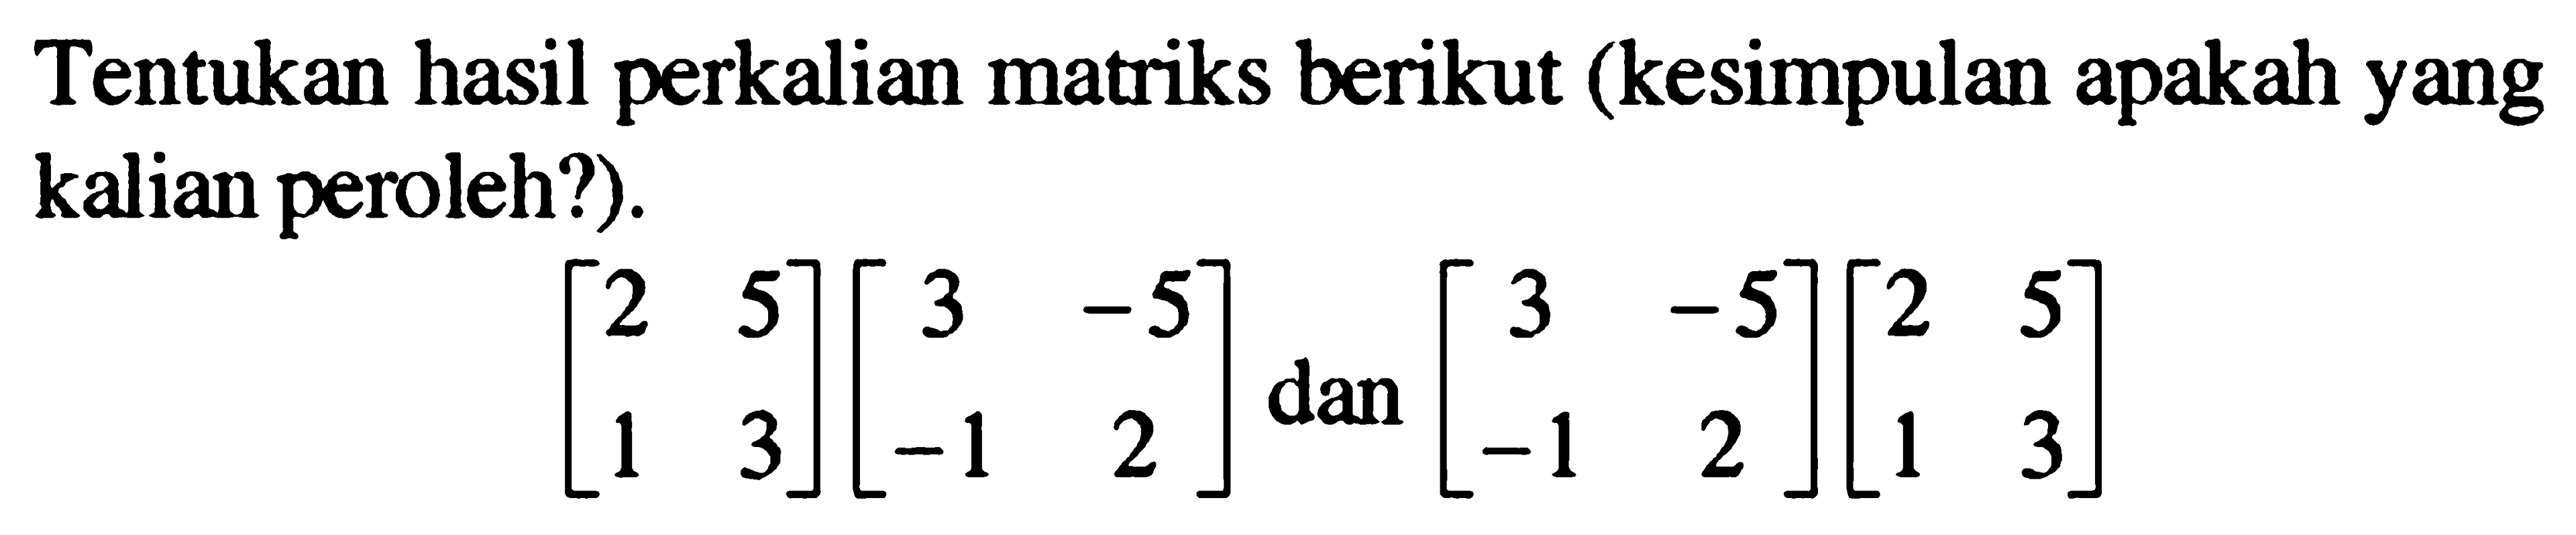 Tentukan hasil perkalian matriks berikut (kesimpulan apakah yang kalian peroleh?). [2 5 1 3][3 -5 -1 2] dan [3 -5 -1 2][2 5 1 3]